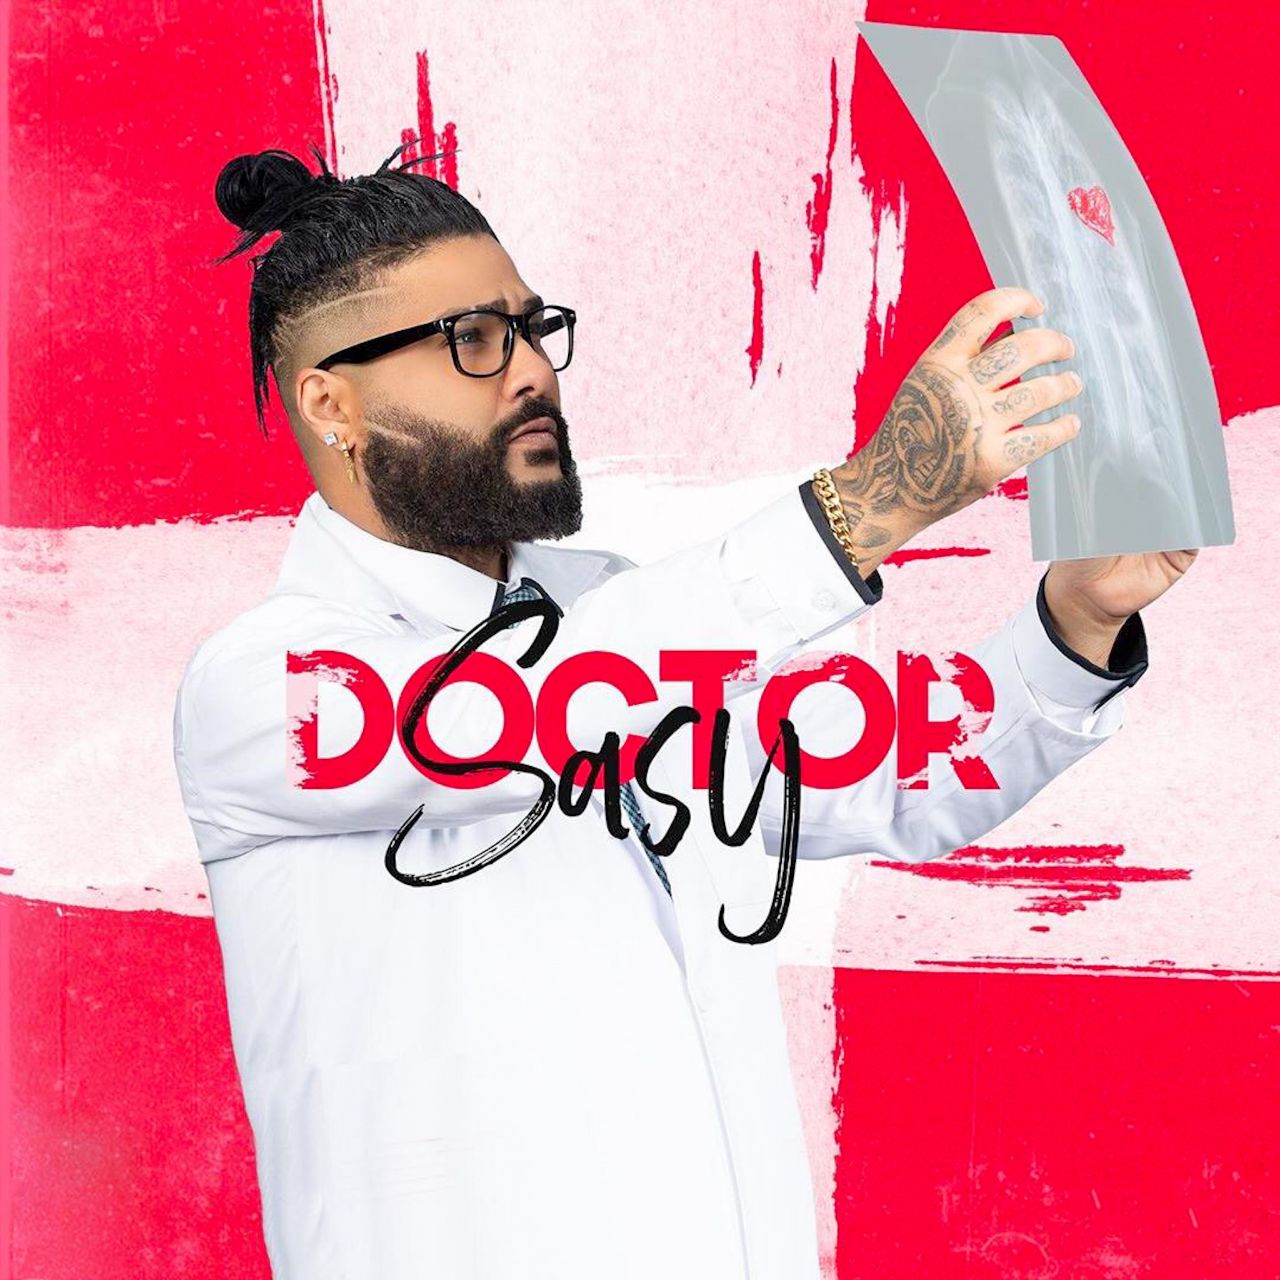  دانلود آهنگ جدید ساسی - دکتر | Download New Music By Sasy - Doctor 